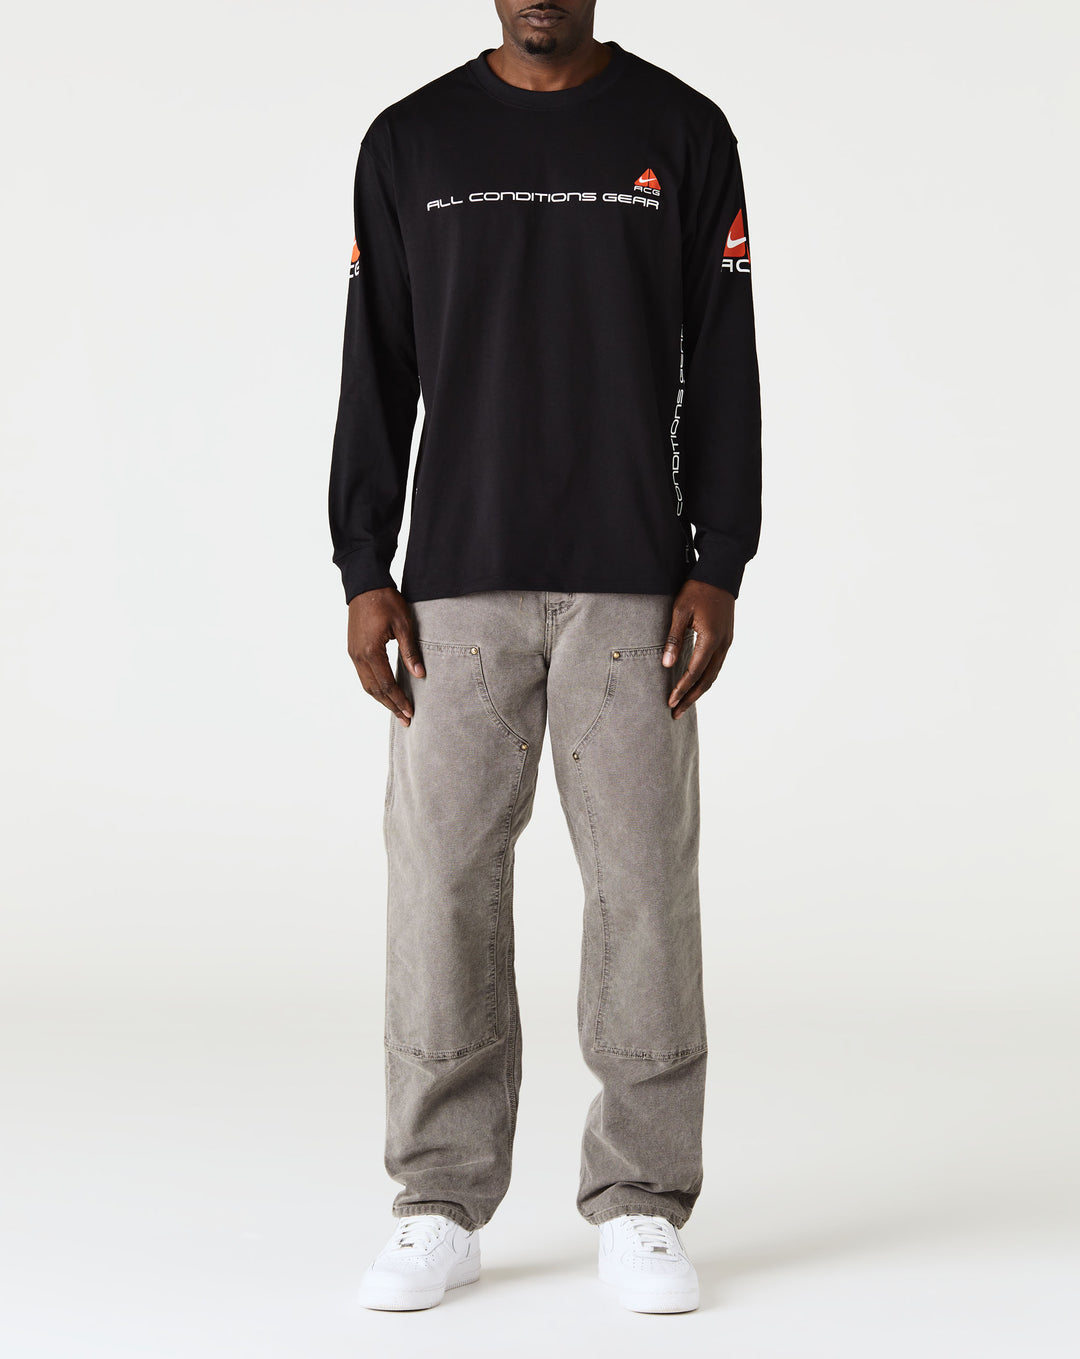 Nike ACG 'Lungs' Long-Sleeve T-Shirt  - Cheap Urlfreeze Jordan outlet